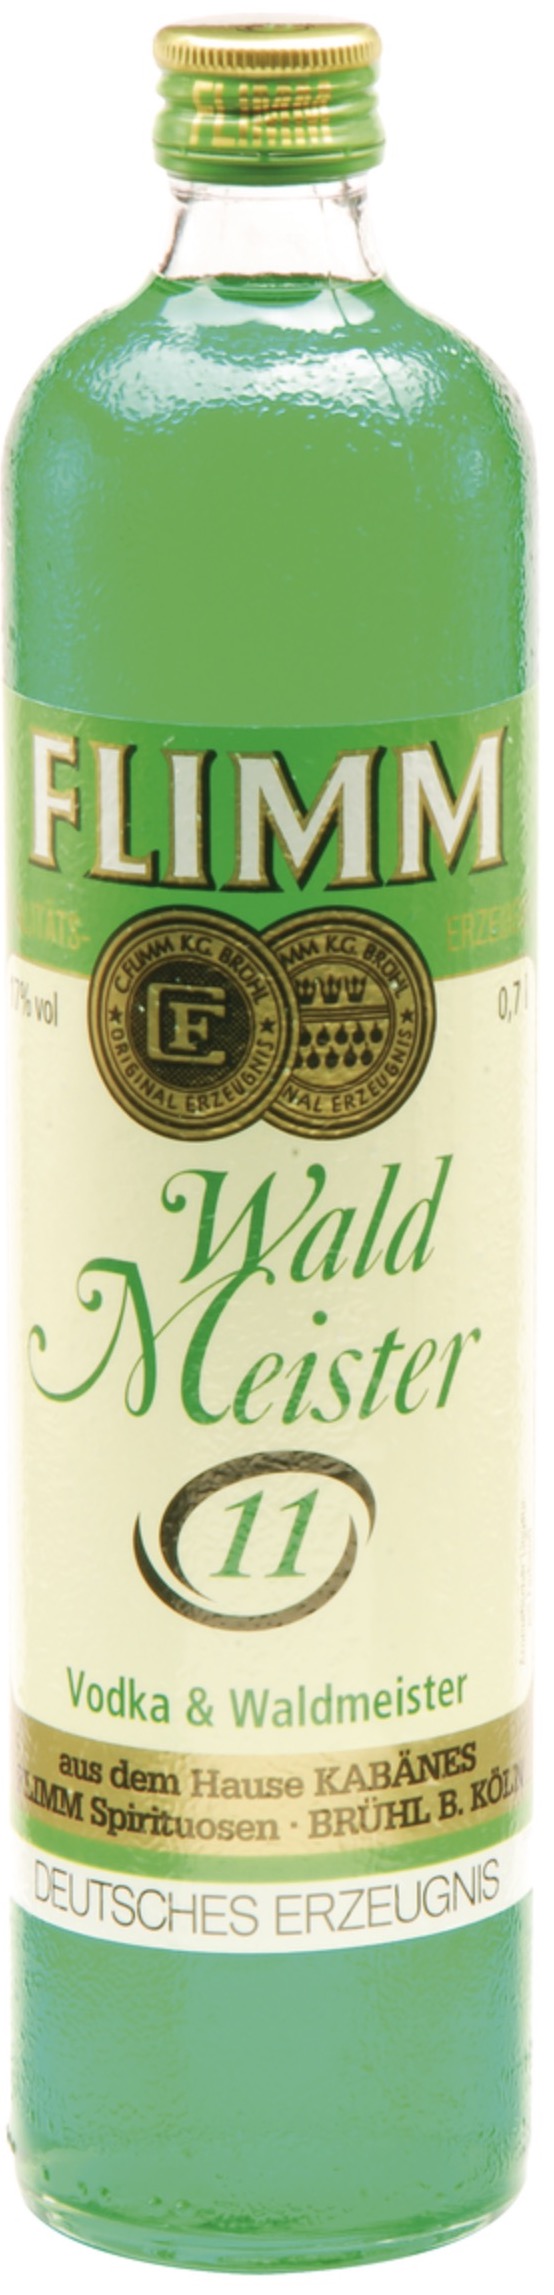 Flimm Waldmeister Elf 17% vol. 0,7L